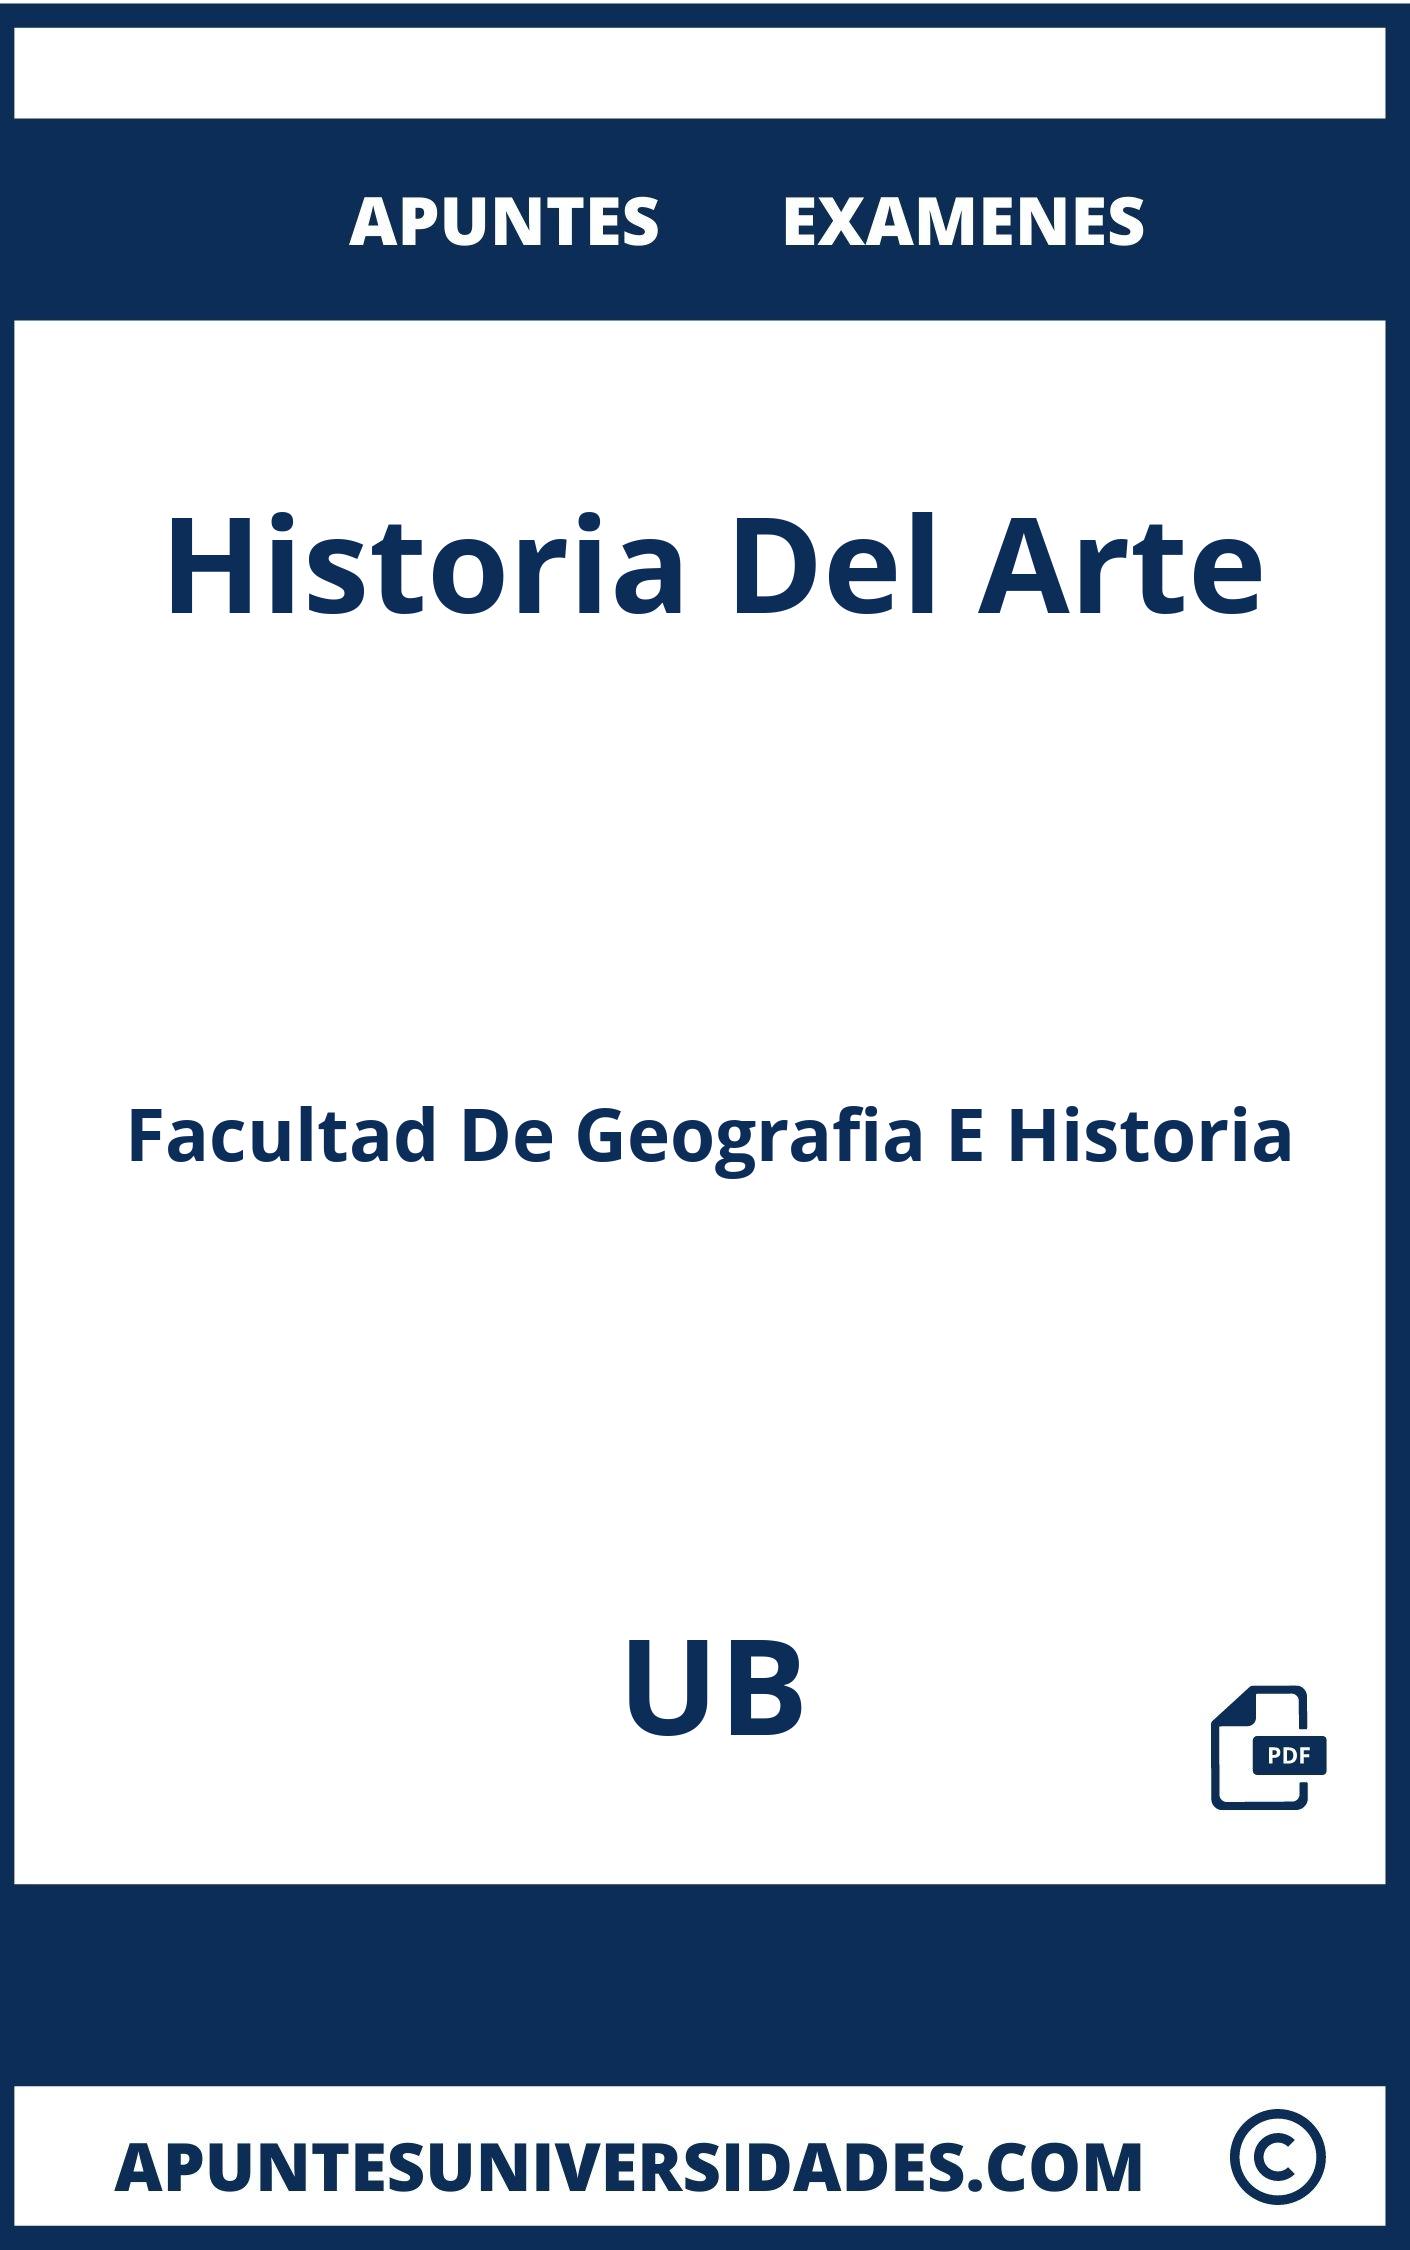 Examenes y Apuntes Historia Del Arte UB